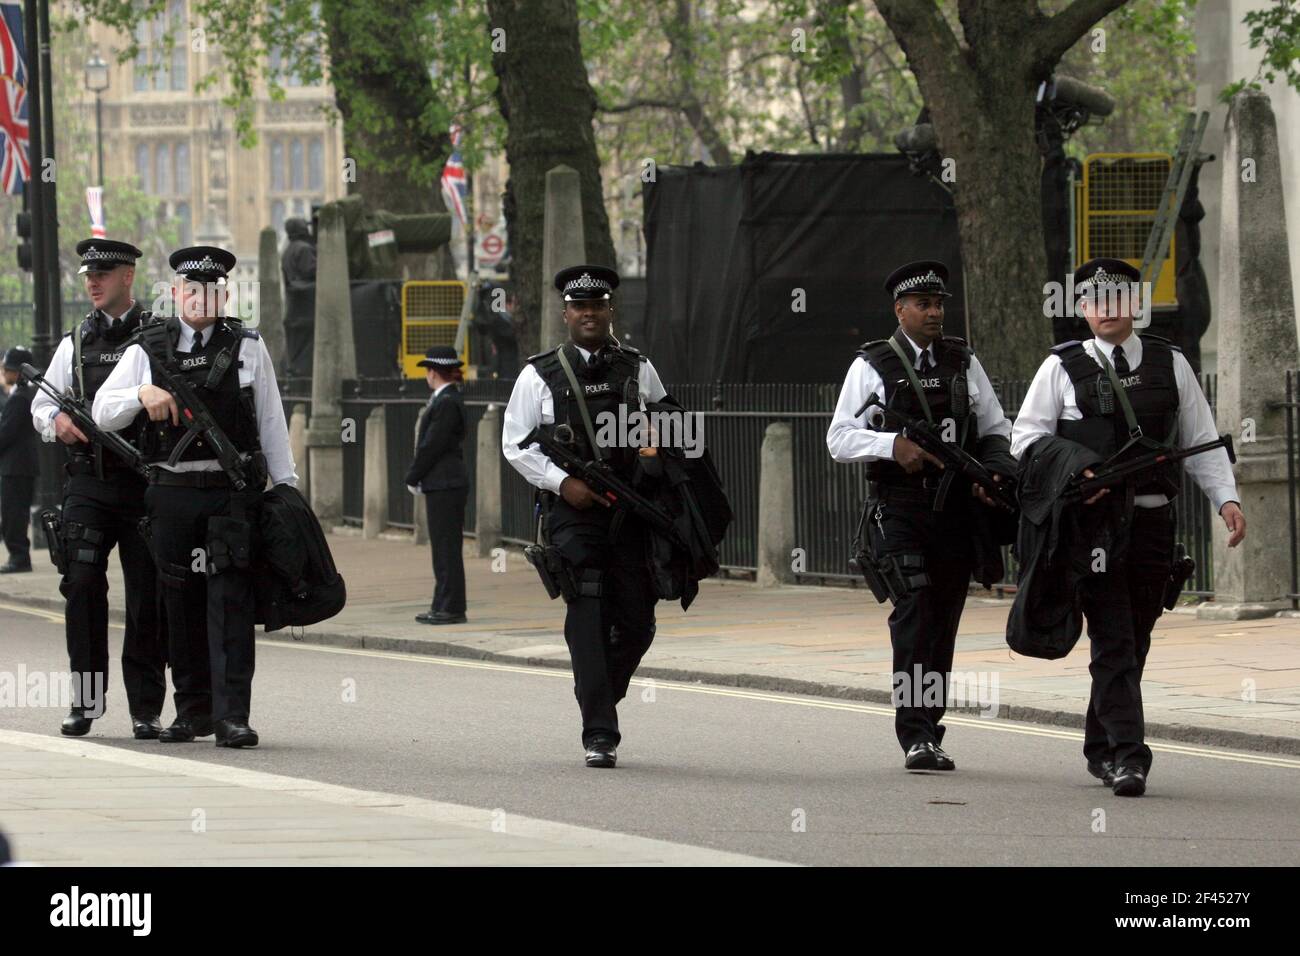 29 de abril de 2011. Westminster Abbey, Londres, Inglaterra. Día de la boda real. La presencia de la policía pesada a lo largo de la ruta y los alrededores de la Abadía de Westminster como enorme Foto de stock